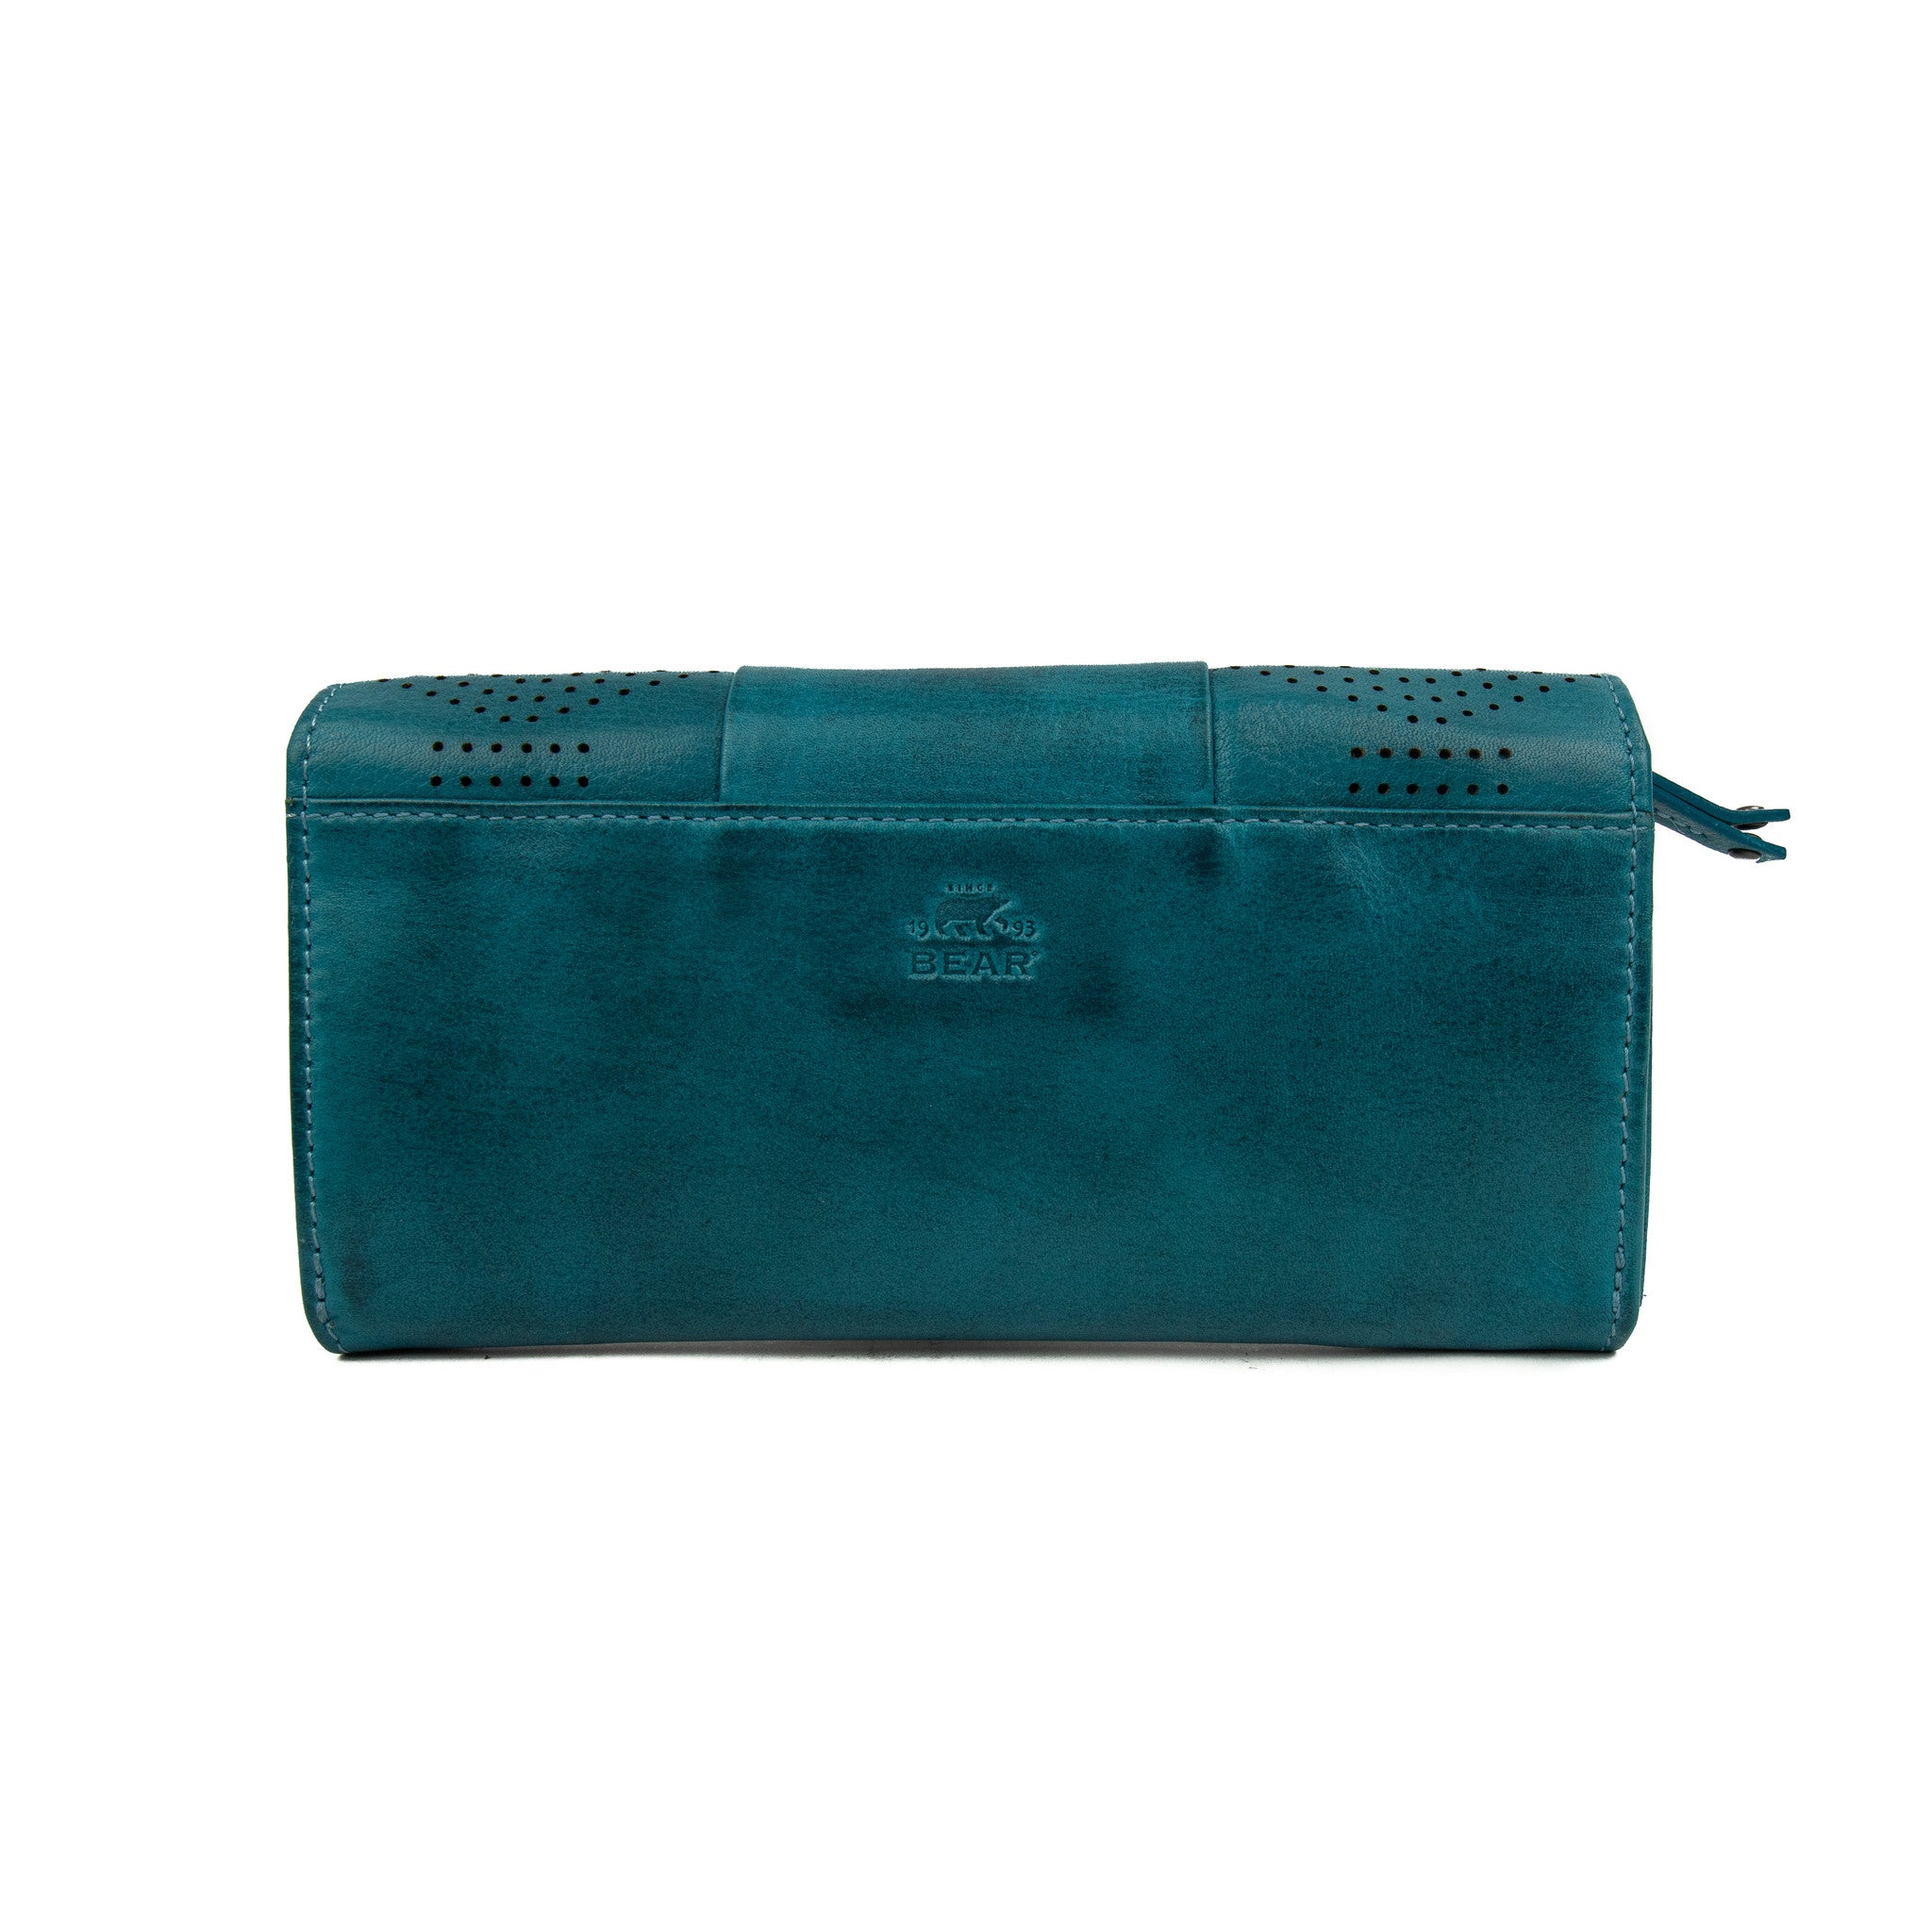 Wrap wallet 'Sterre' aqua - CL 18208